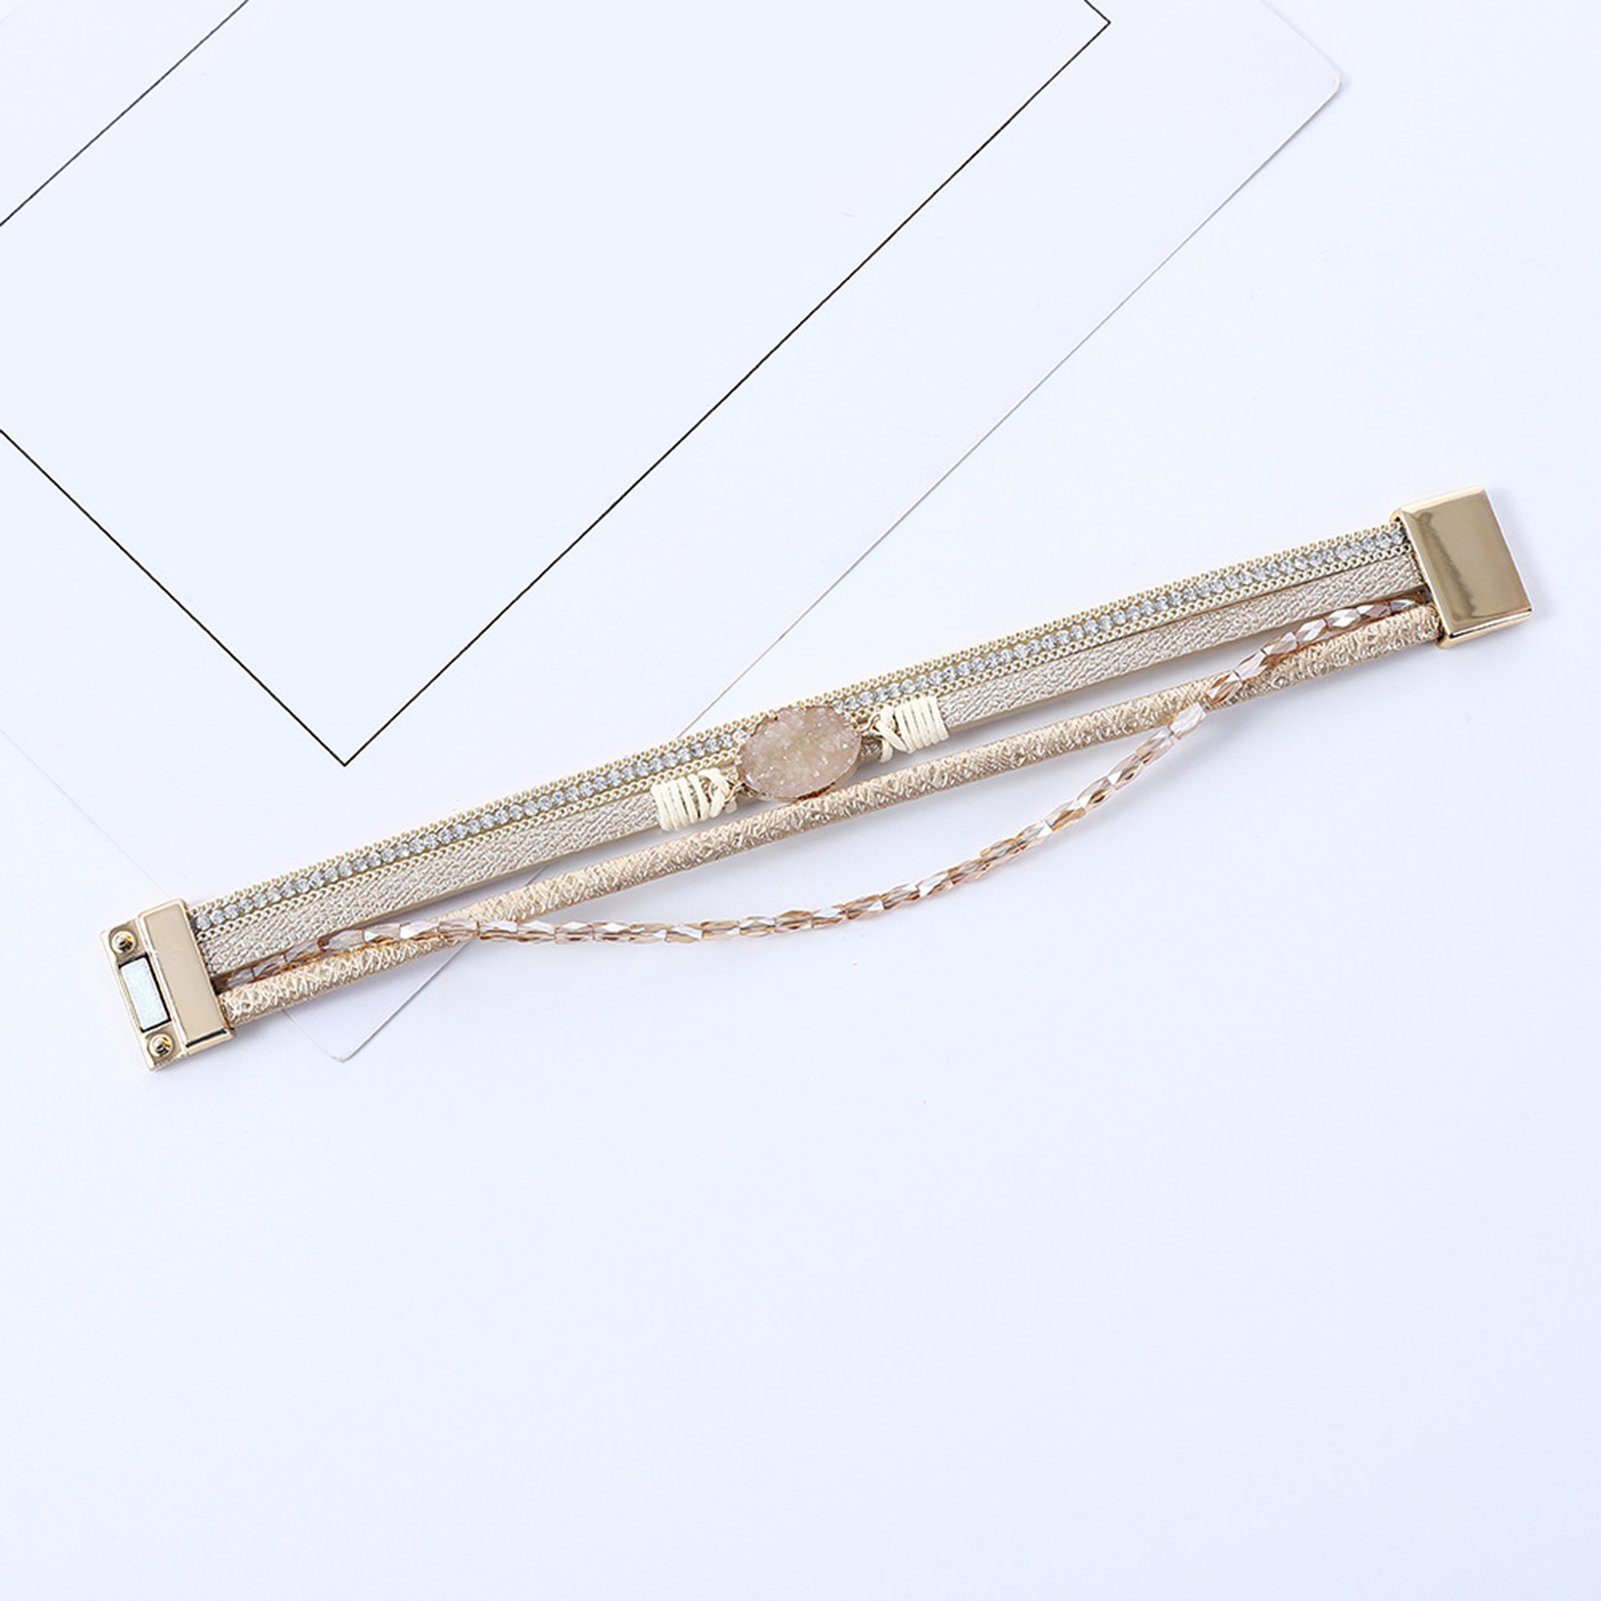 Rutaqian Armband Armband, Kristallperlen-Armband Boho-Manschettenarmbänder, Braun